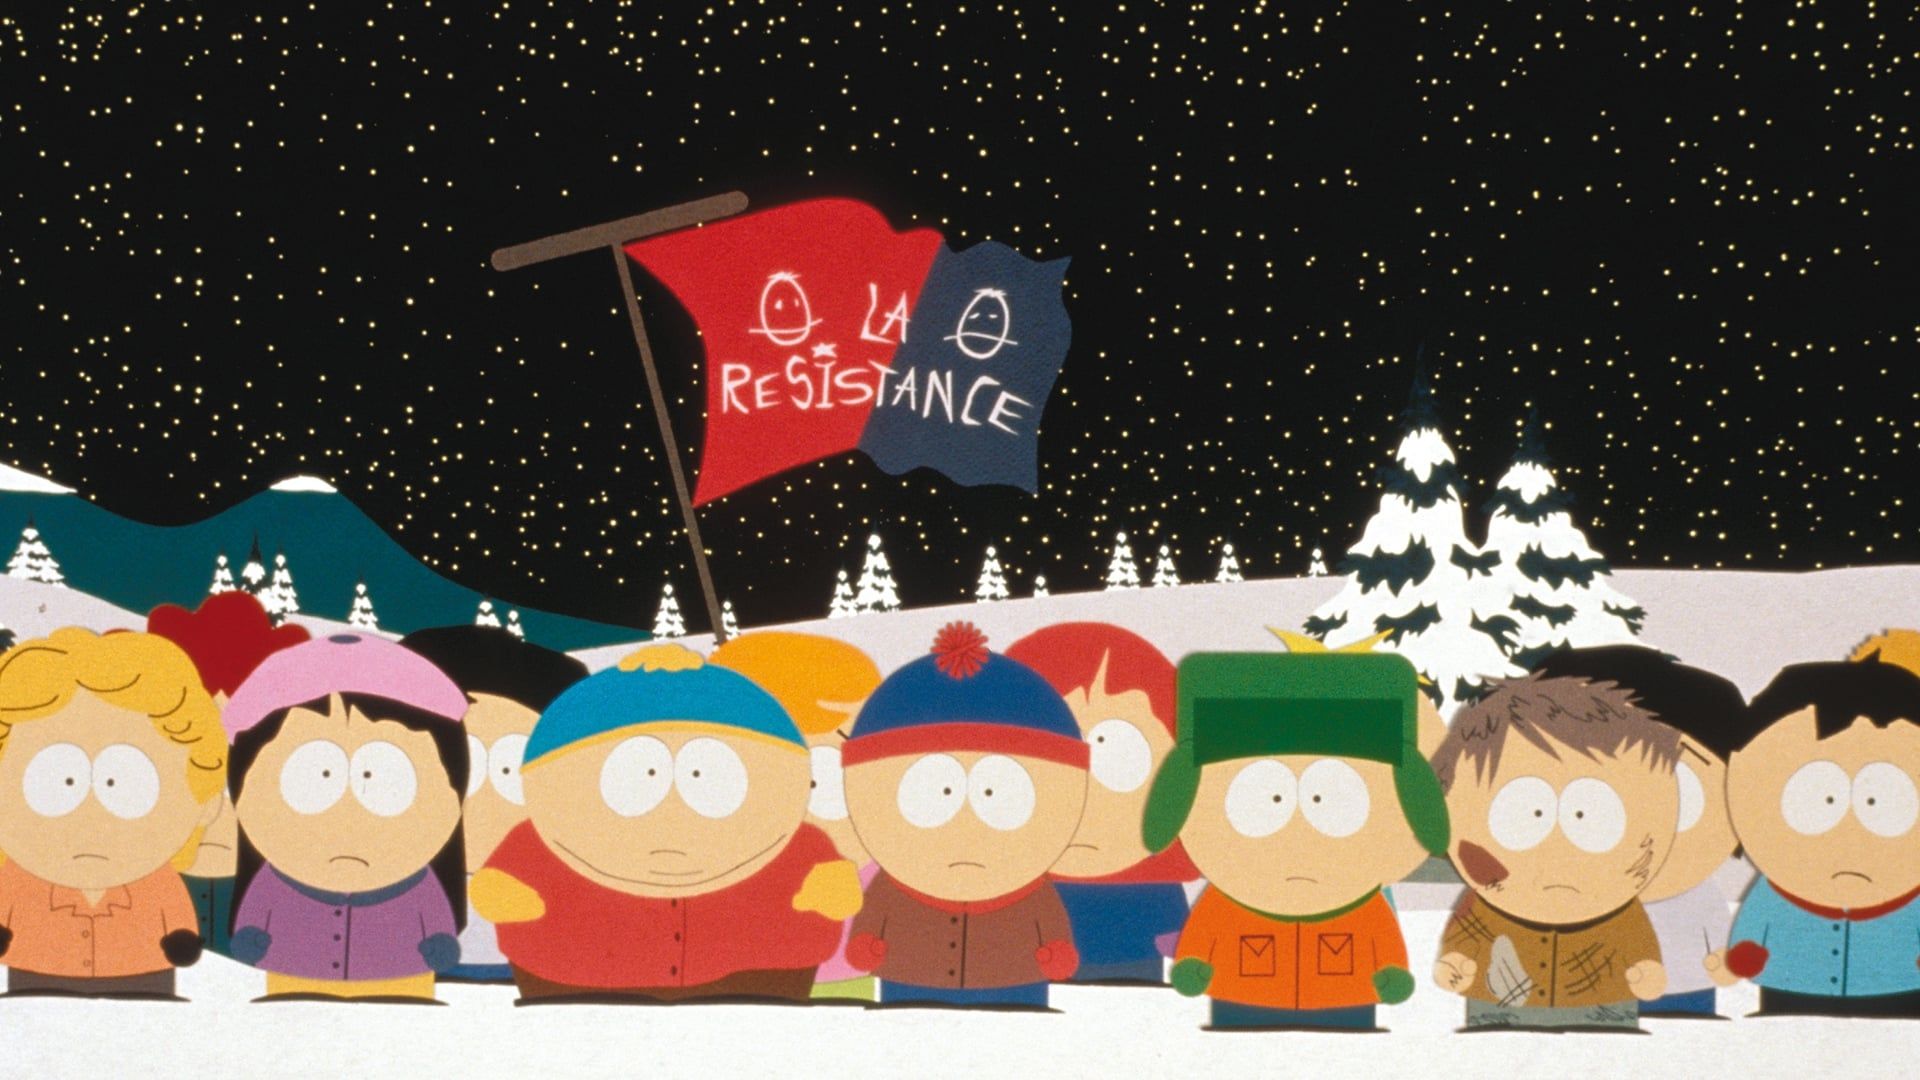 South Park: Bigger, Longer & Uncut Backdrop